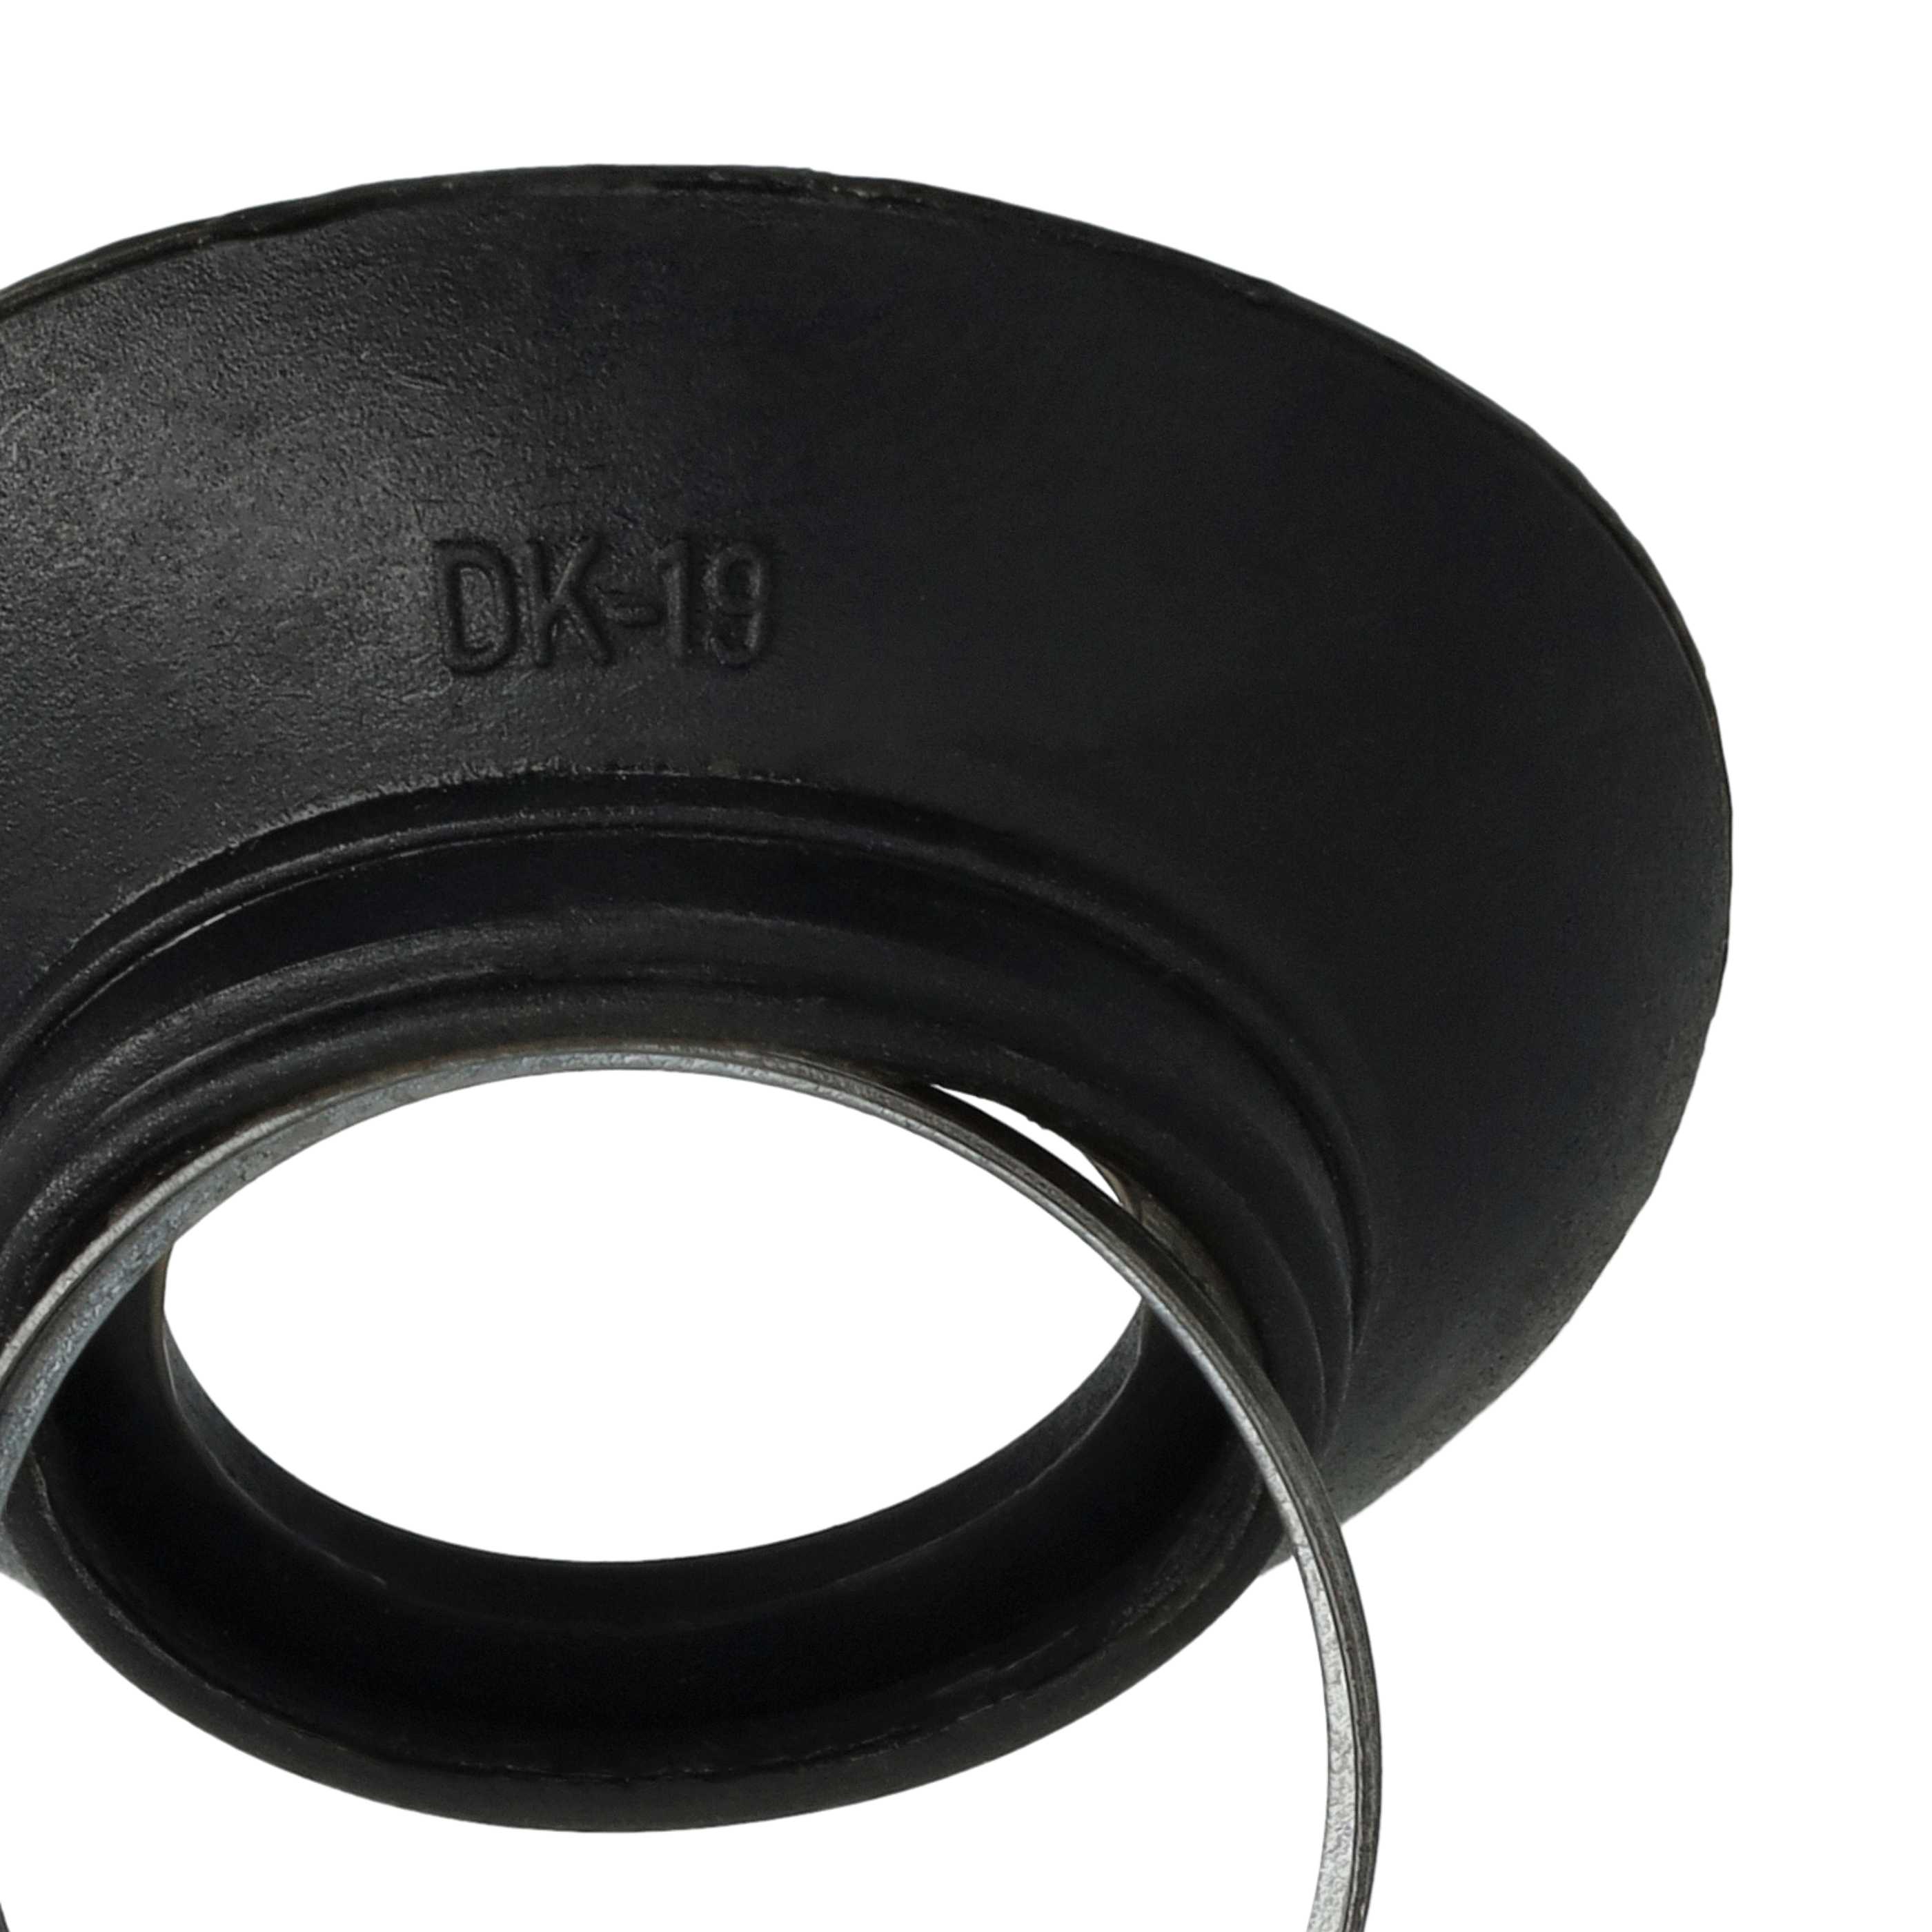 Œilleton viseur remplace Nikon DK-19 pour appareil photo, DSLR D810a